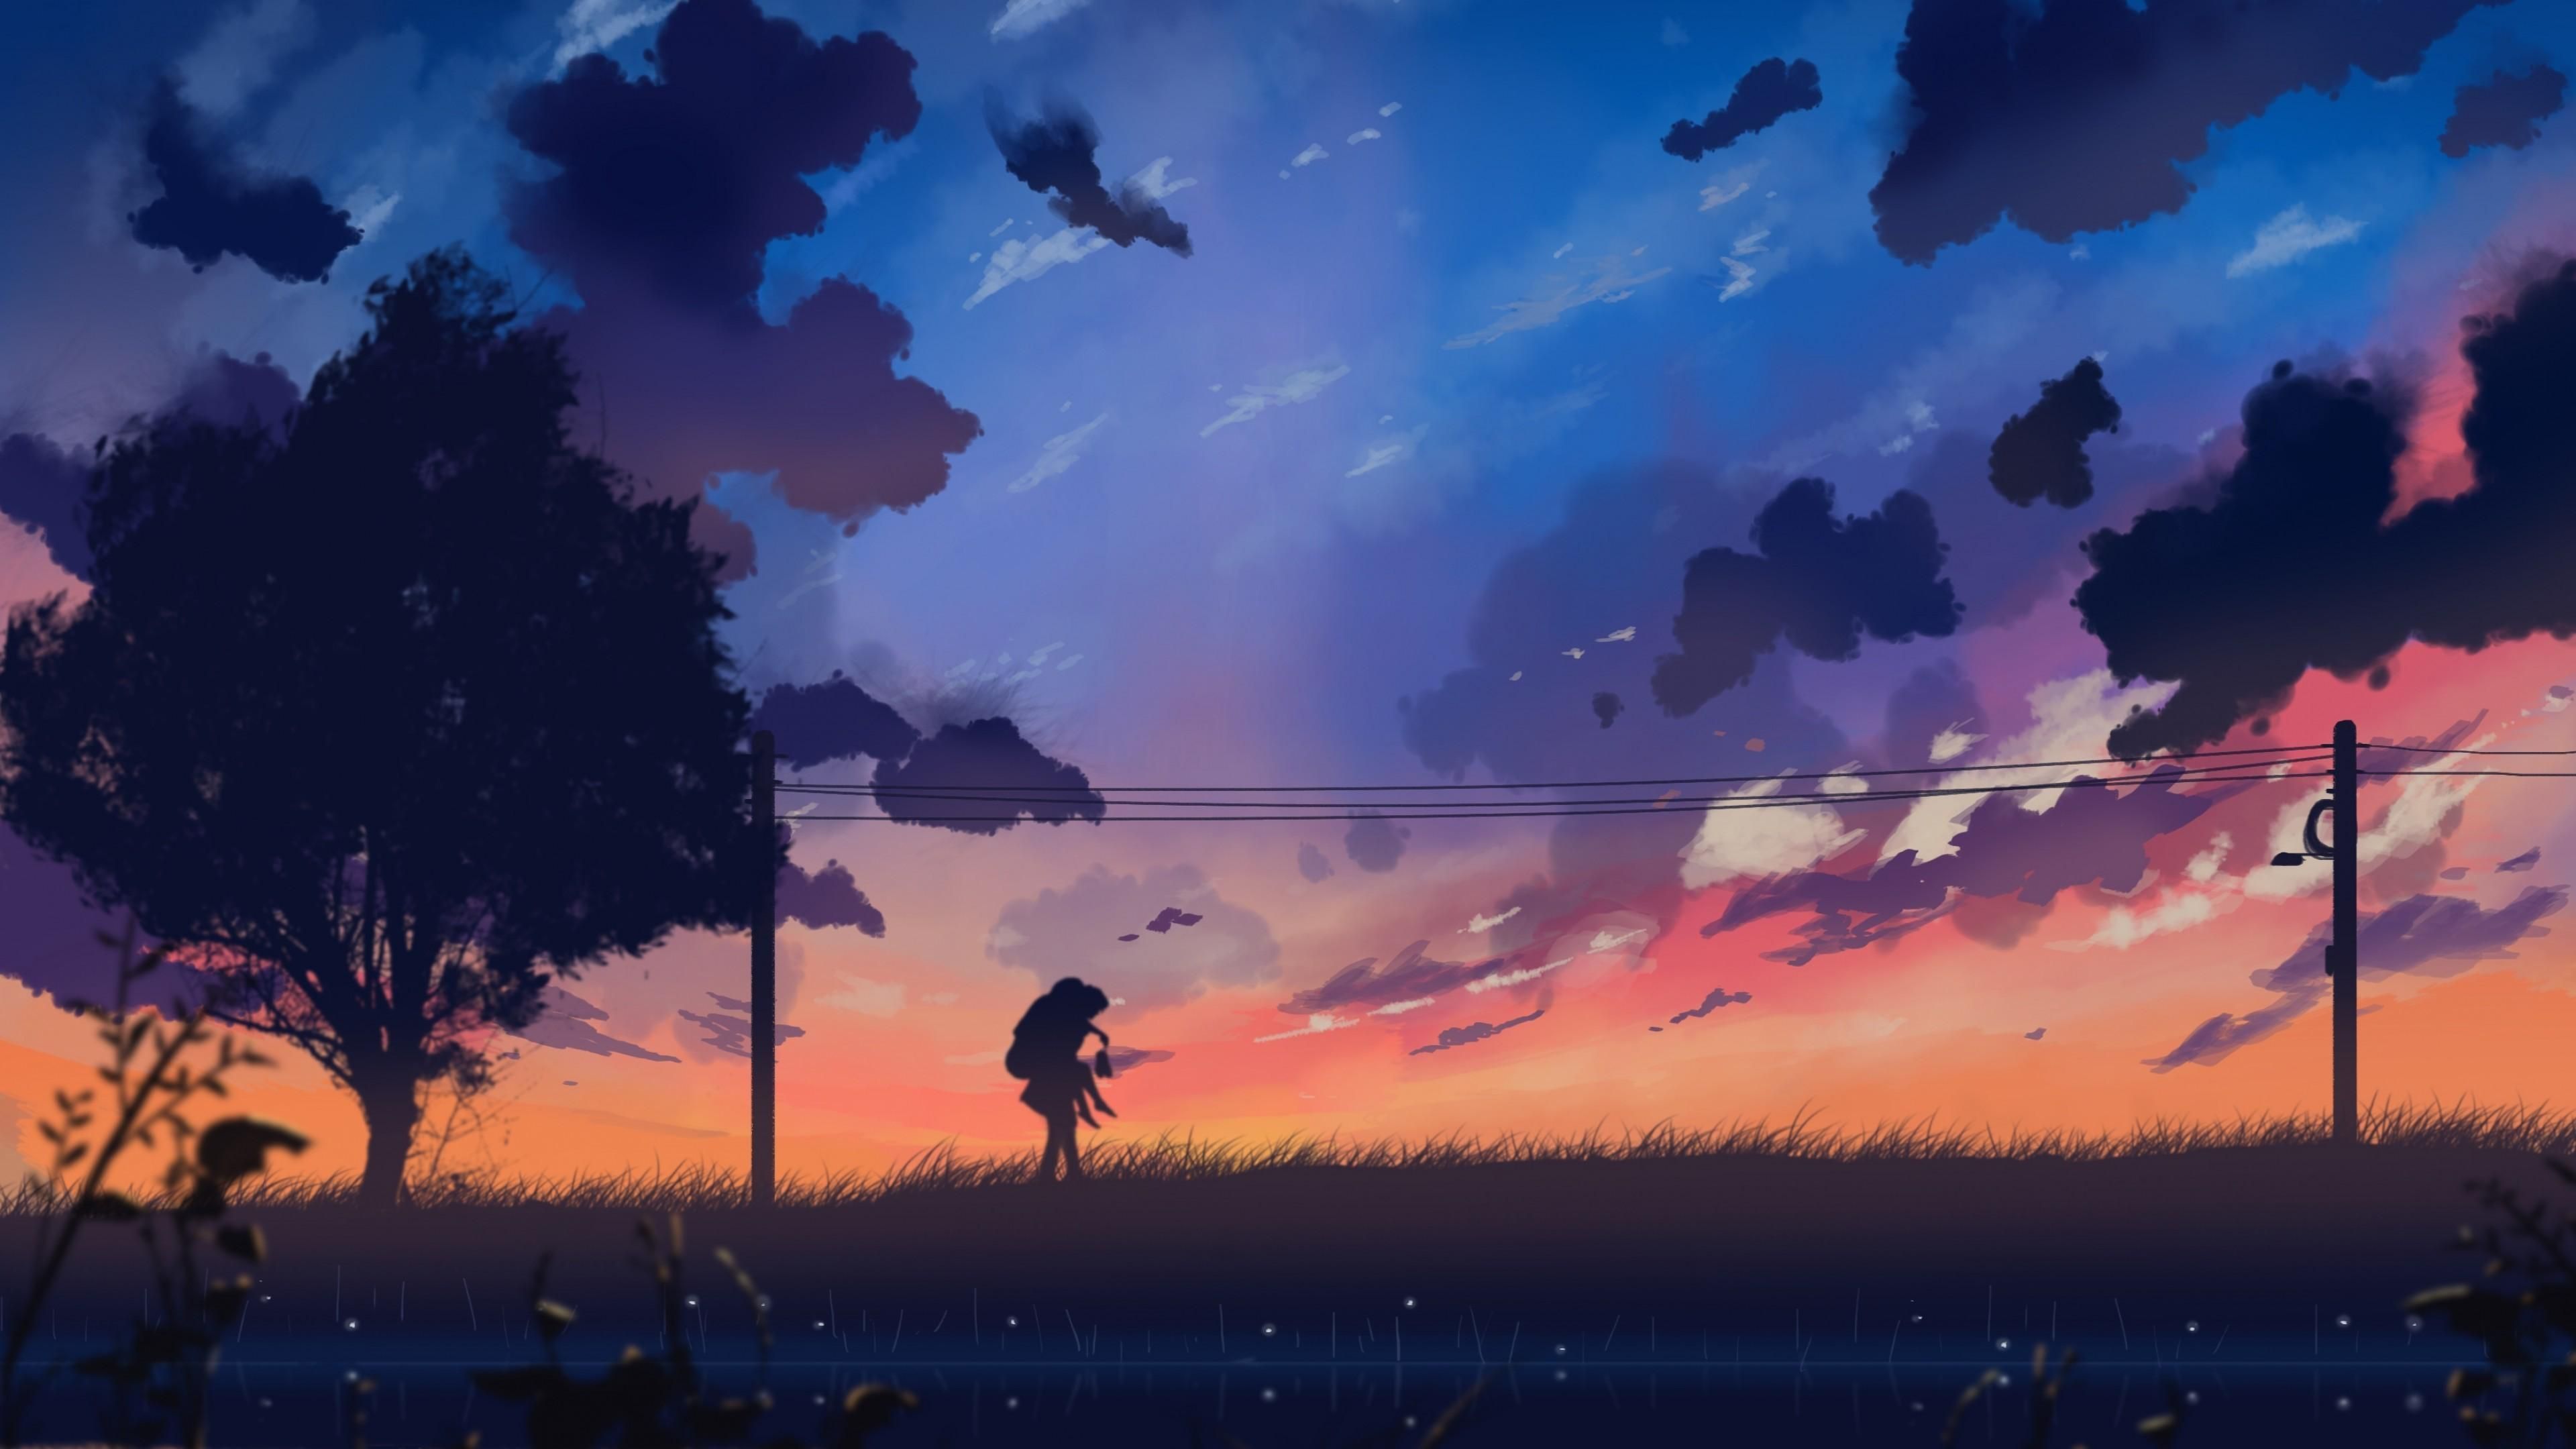 Aesthetic Anime Landscape Wallpaper C09. Anime scenery, Landscape wallpaper, Anime scenery wallpaper